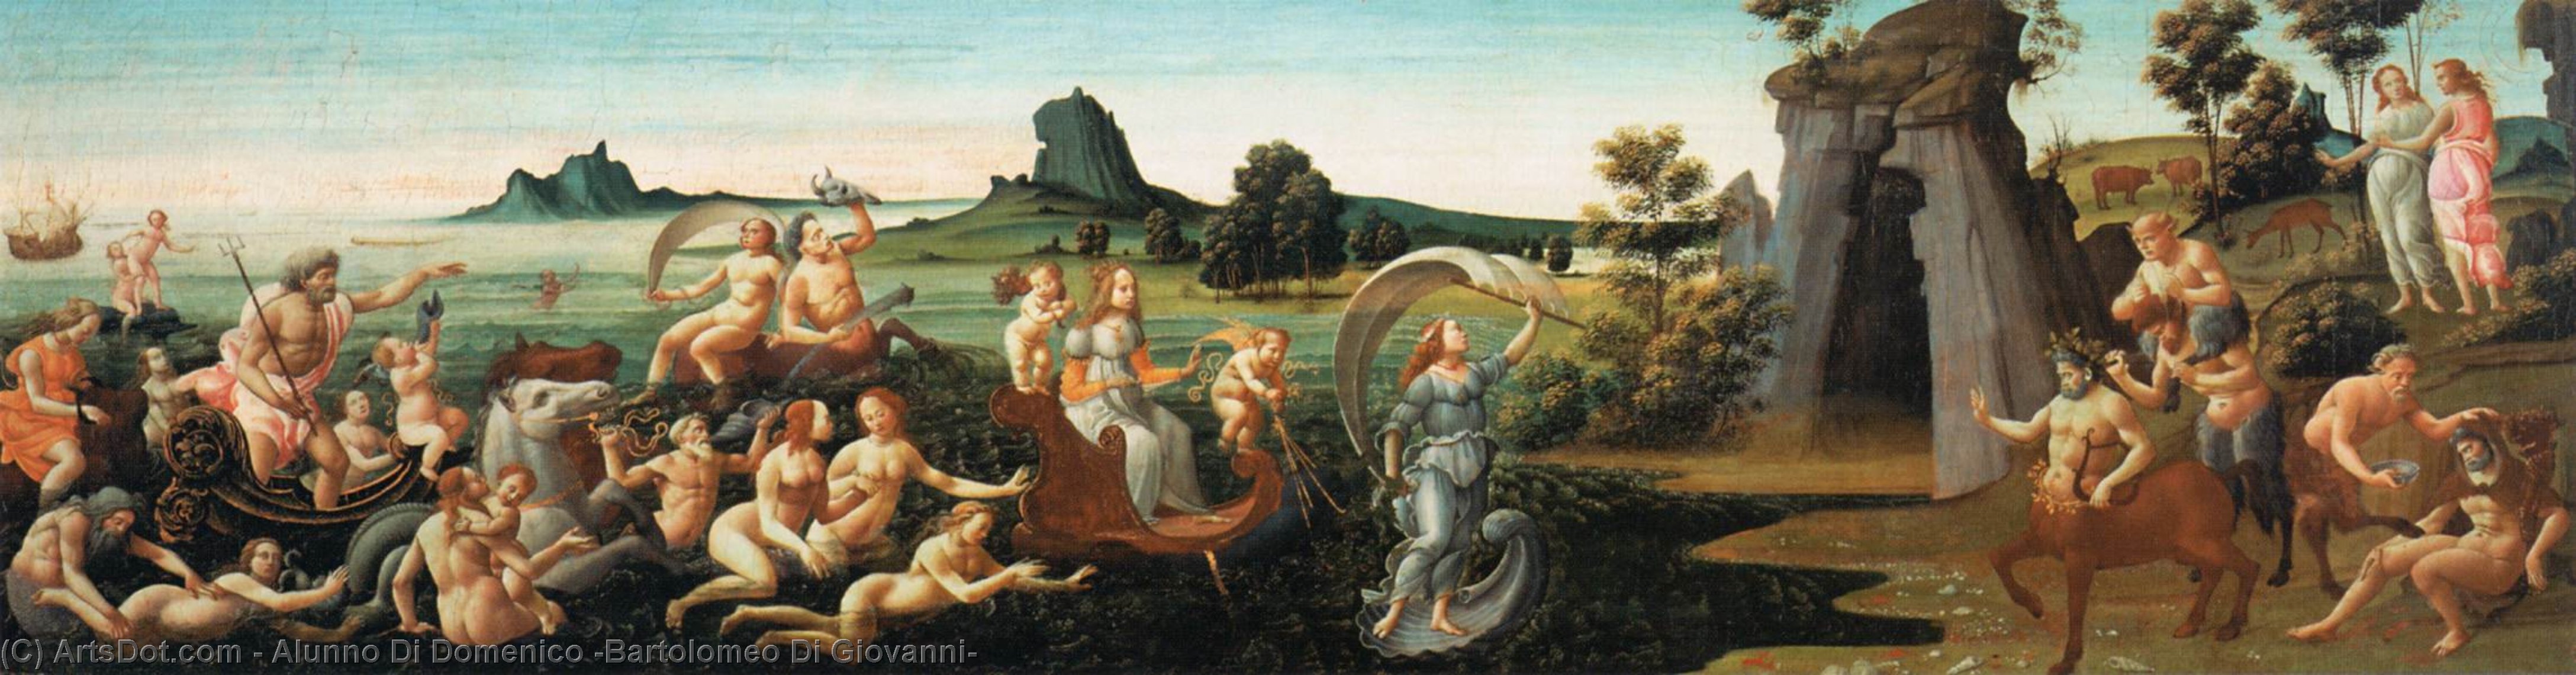 Wikioo.org - The Encyclopedia of Fine Arts - Painting, Artwork by Alunno Di Domenico (Bartolomeo Di Giovanni) - Procession of Thetis